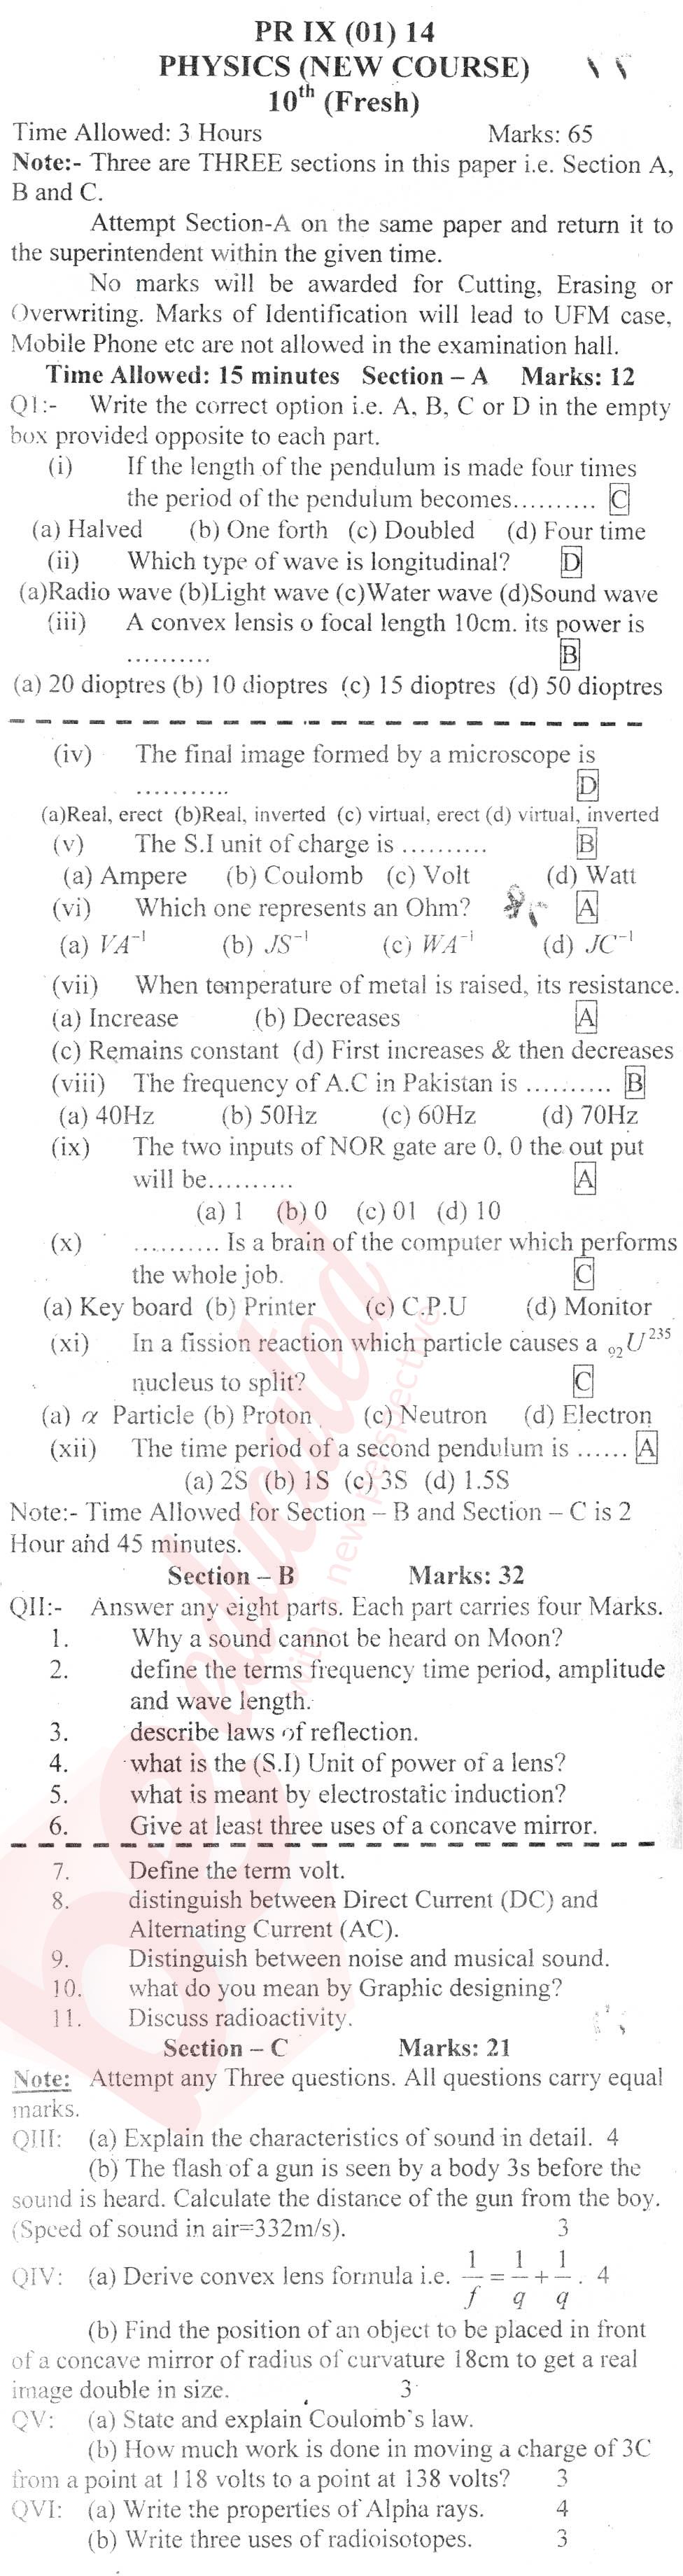 Physics 10th English Medium Past Paper Group 1 BISE Peshawar 2014